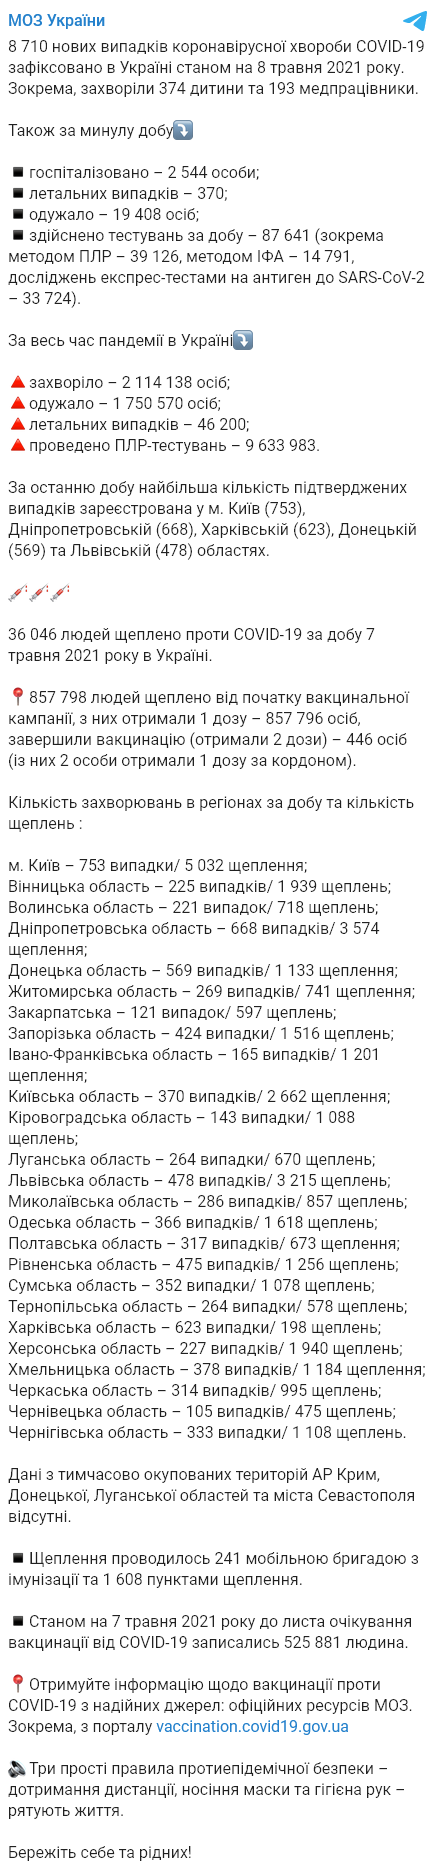 В Украине подтвердились почти 9 тысяч новых случаев заражения коронавирусом. Скриншот: Telegram/Минздрав